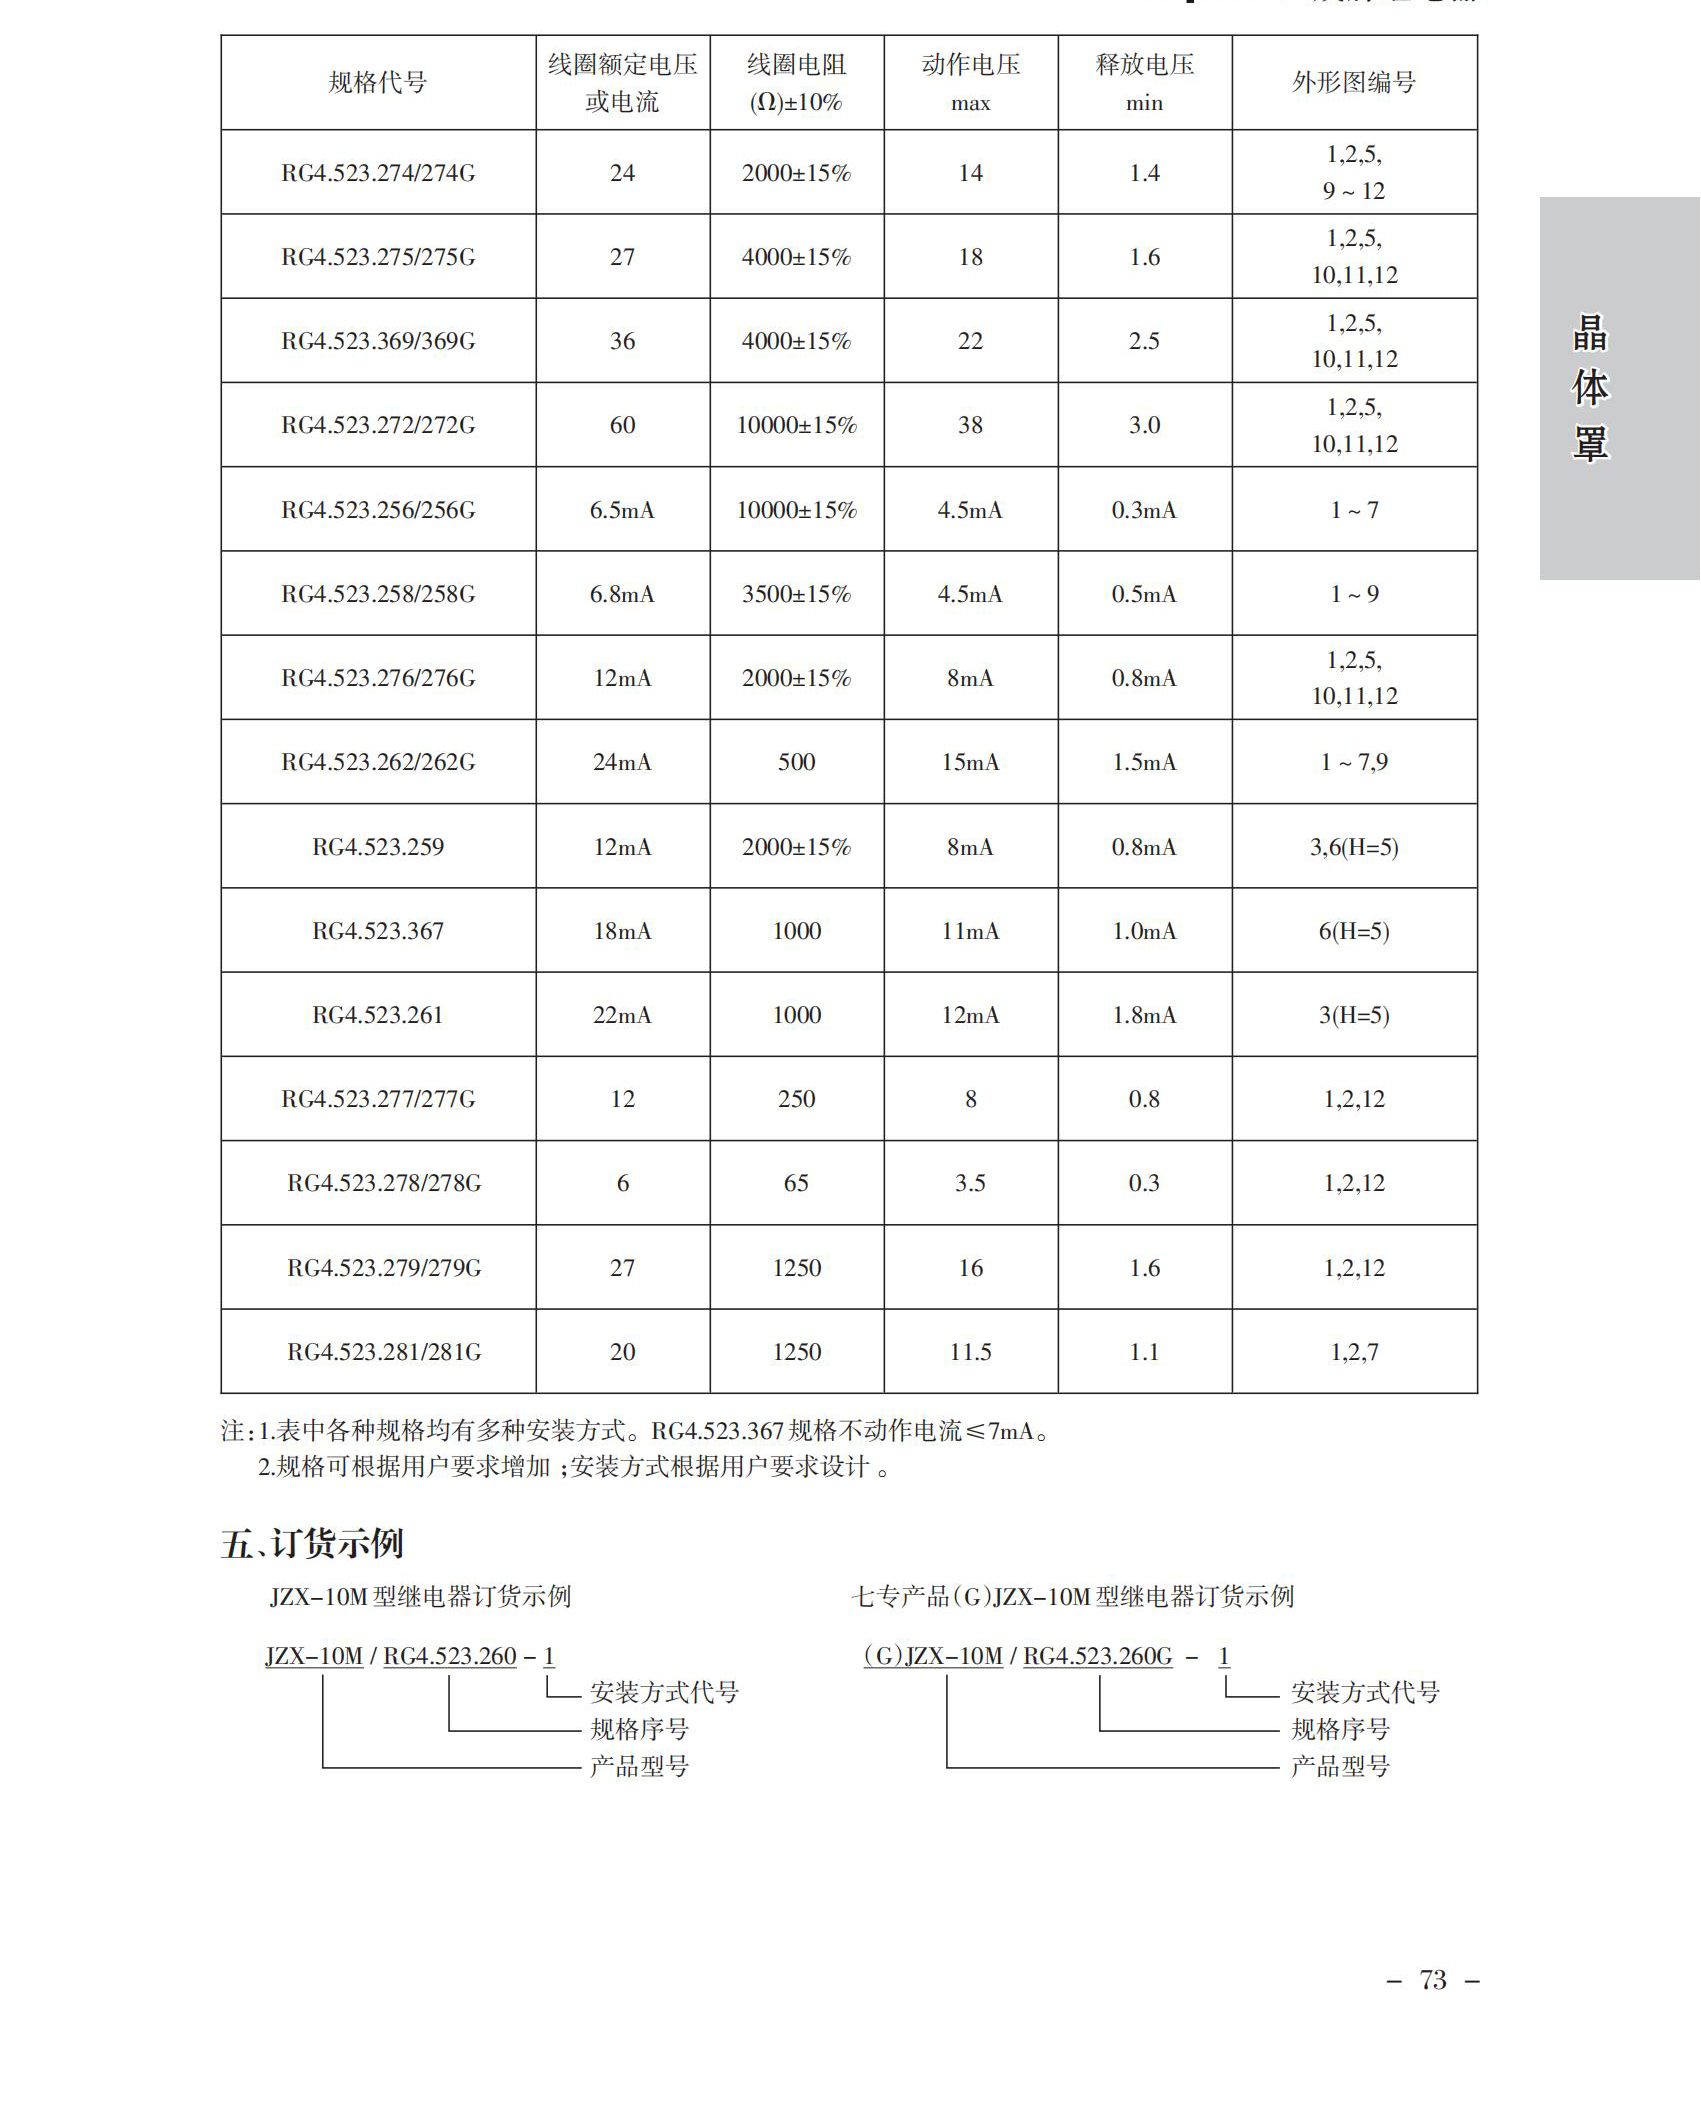 JZX-10M(G)JZX-10M中文版_01.jpg